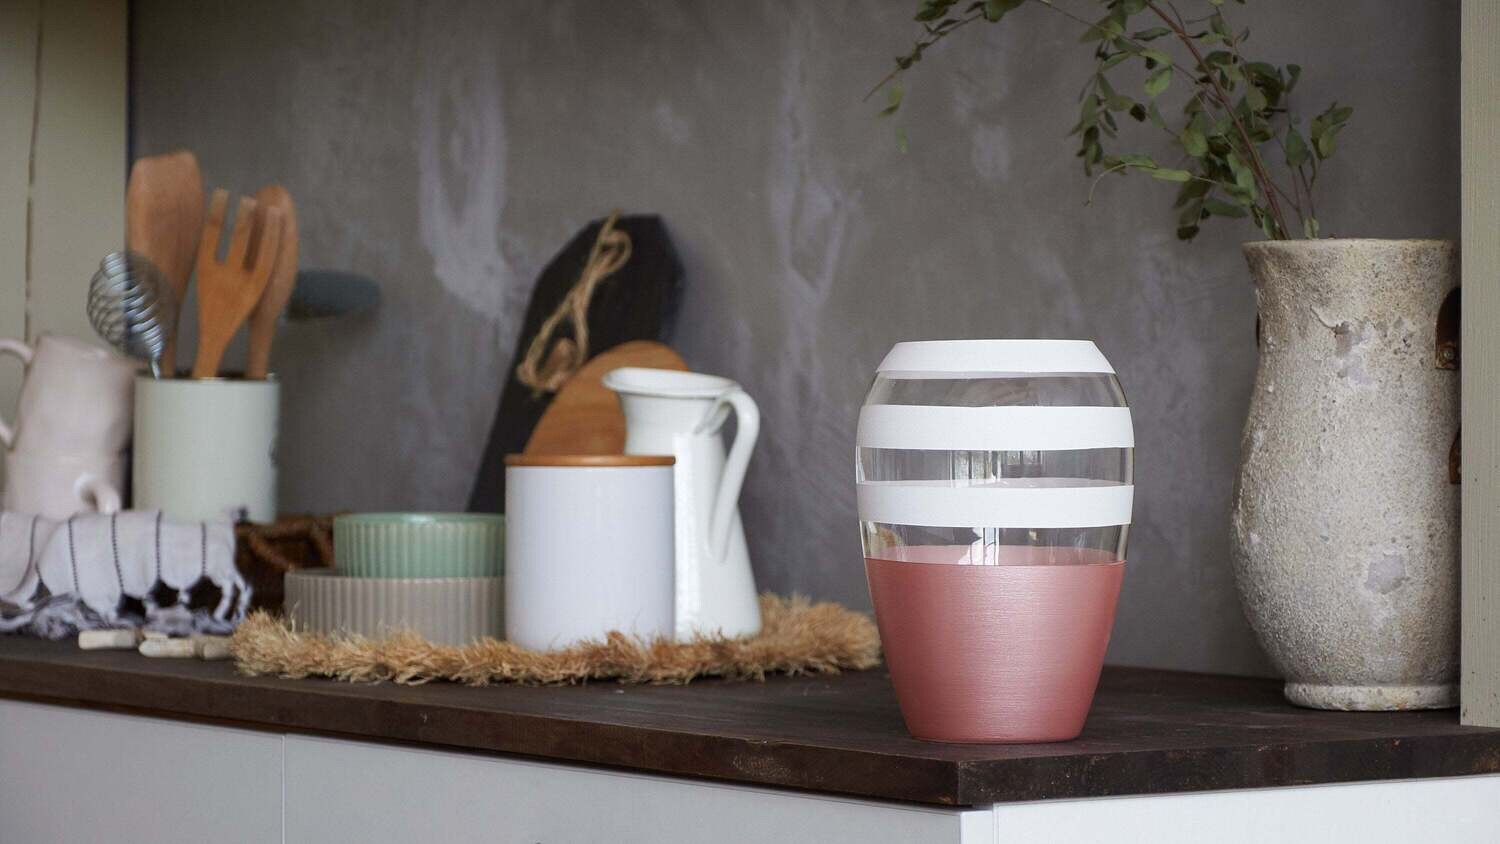 Handpainted Glass Vase for Flowers | Art Oval Vase | Gift for her | Home Room Decor | Table vase 8 in